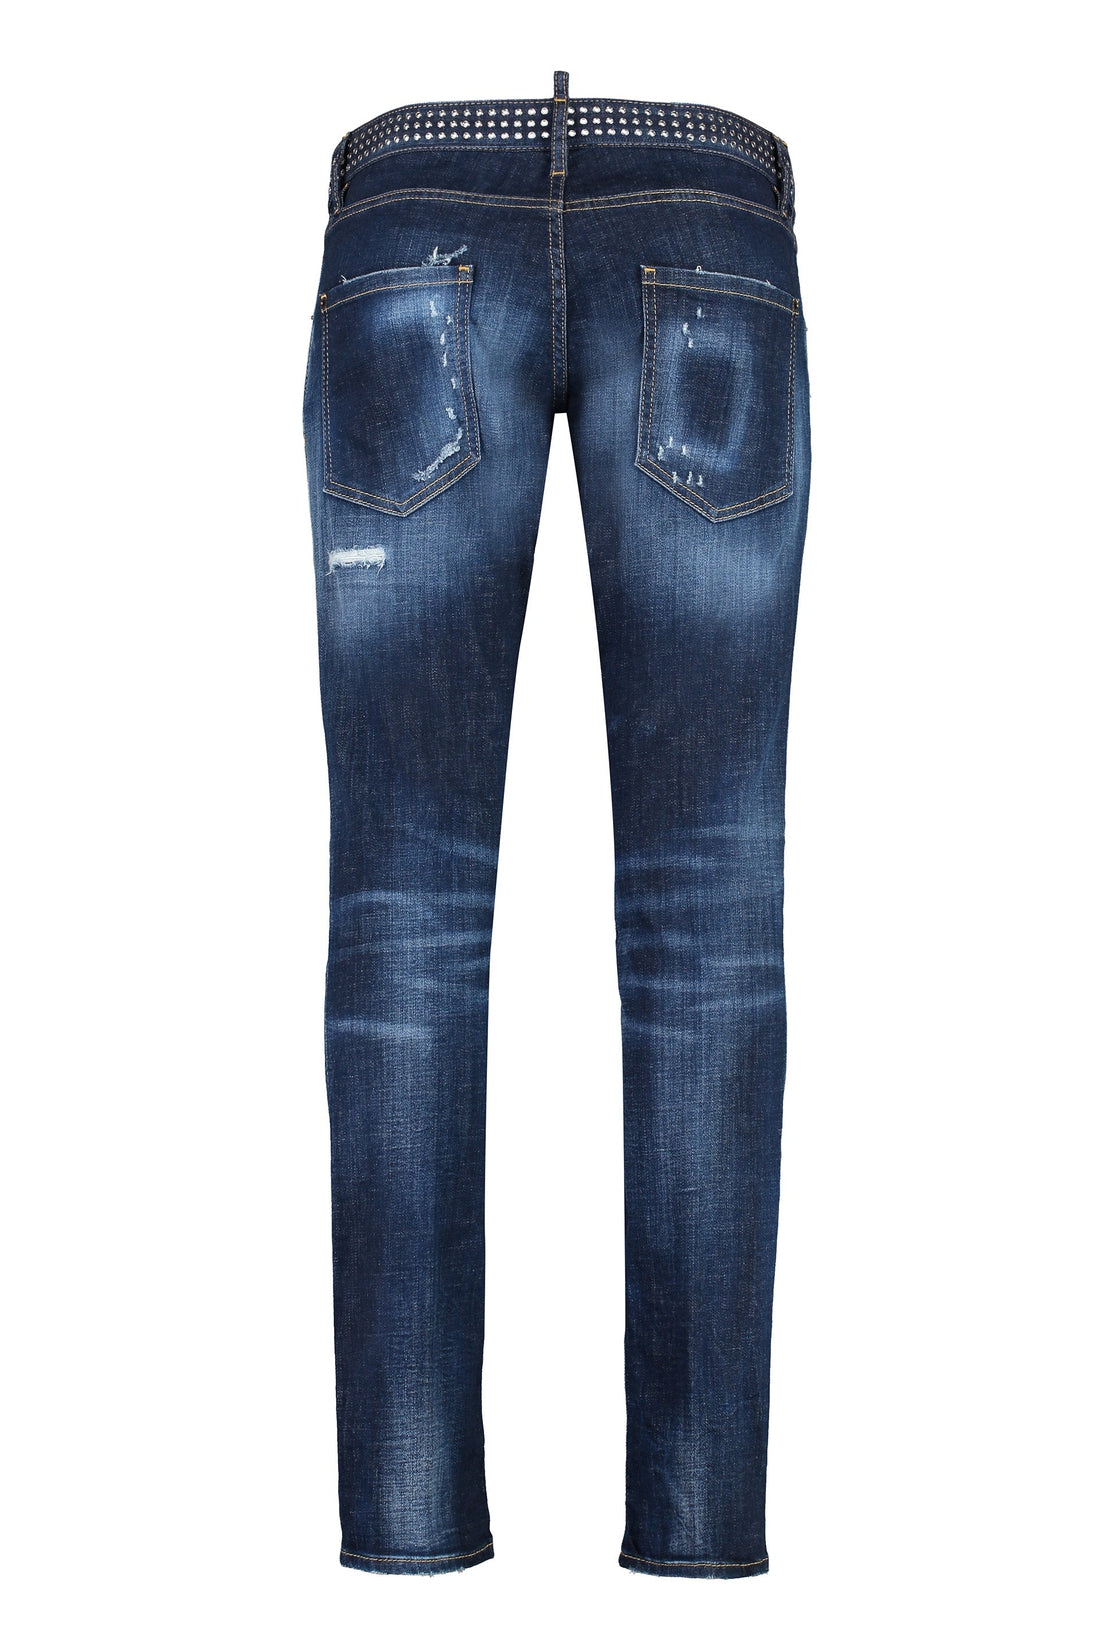 Dsquared2-OUTLET-SALE-Sexy Dean jeans-ARCHIVIST